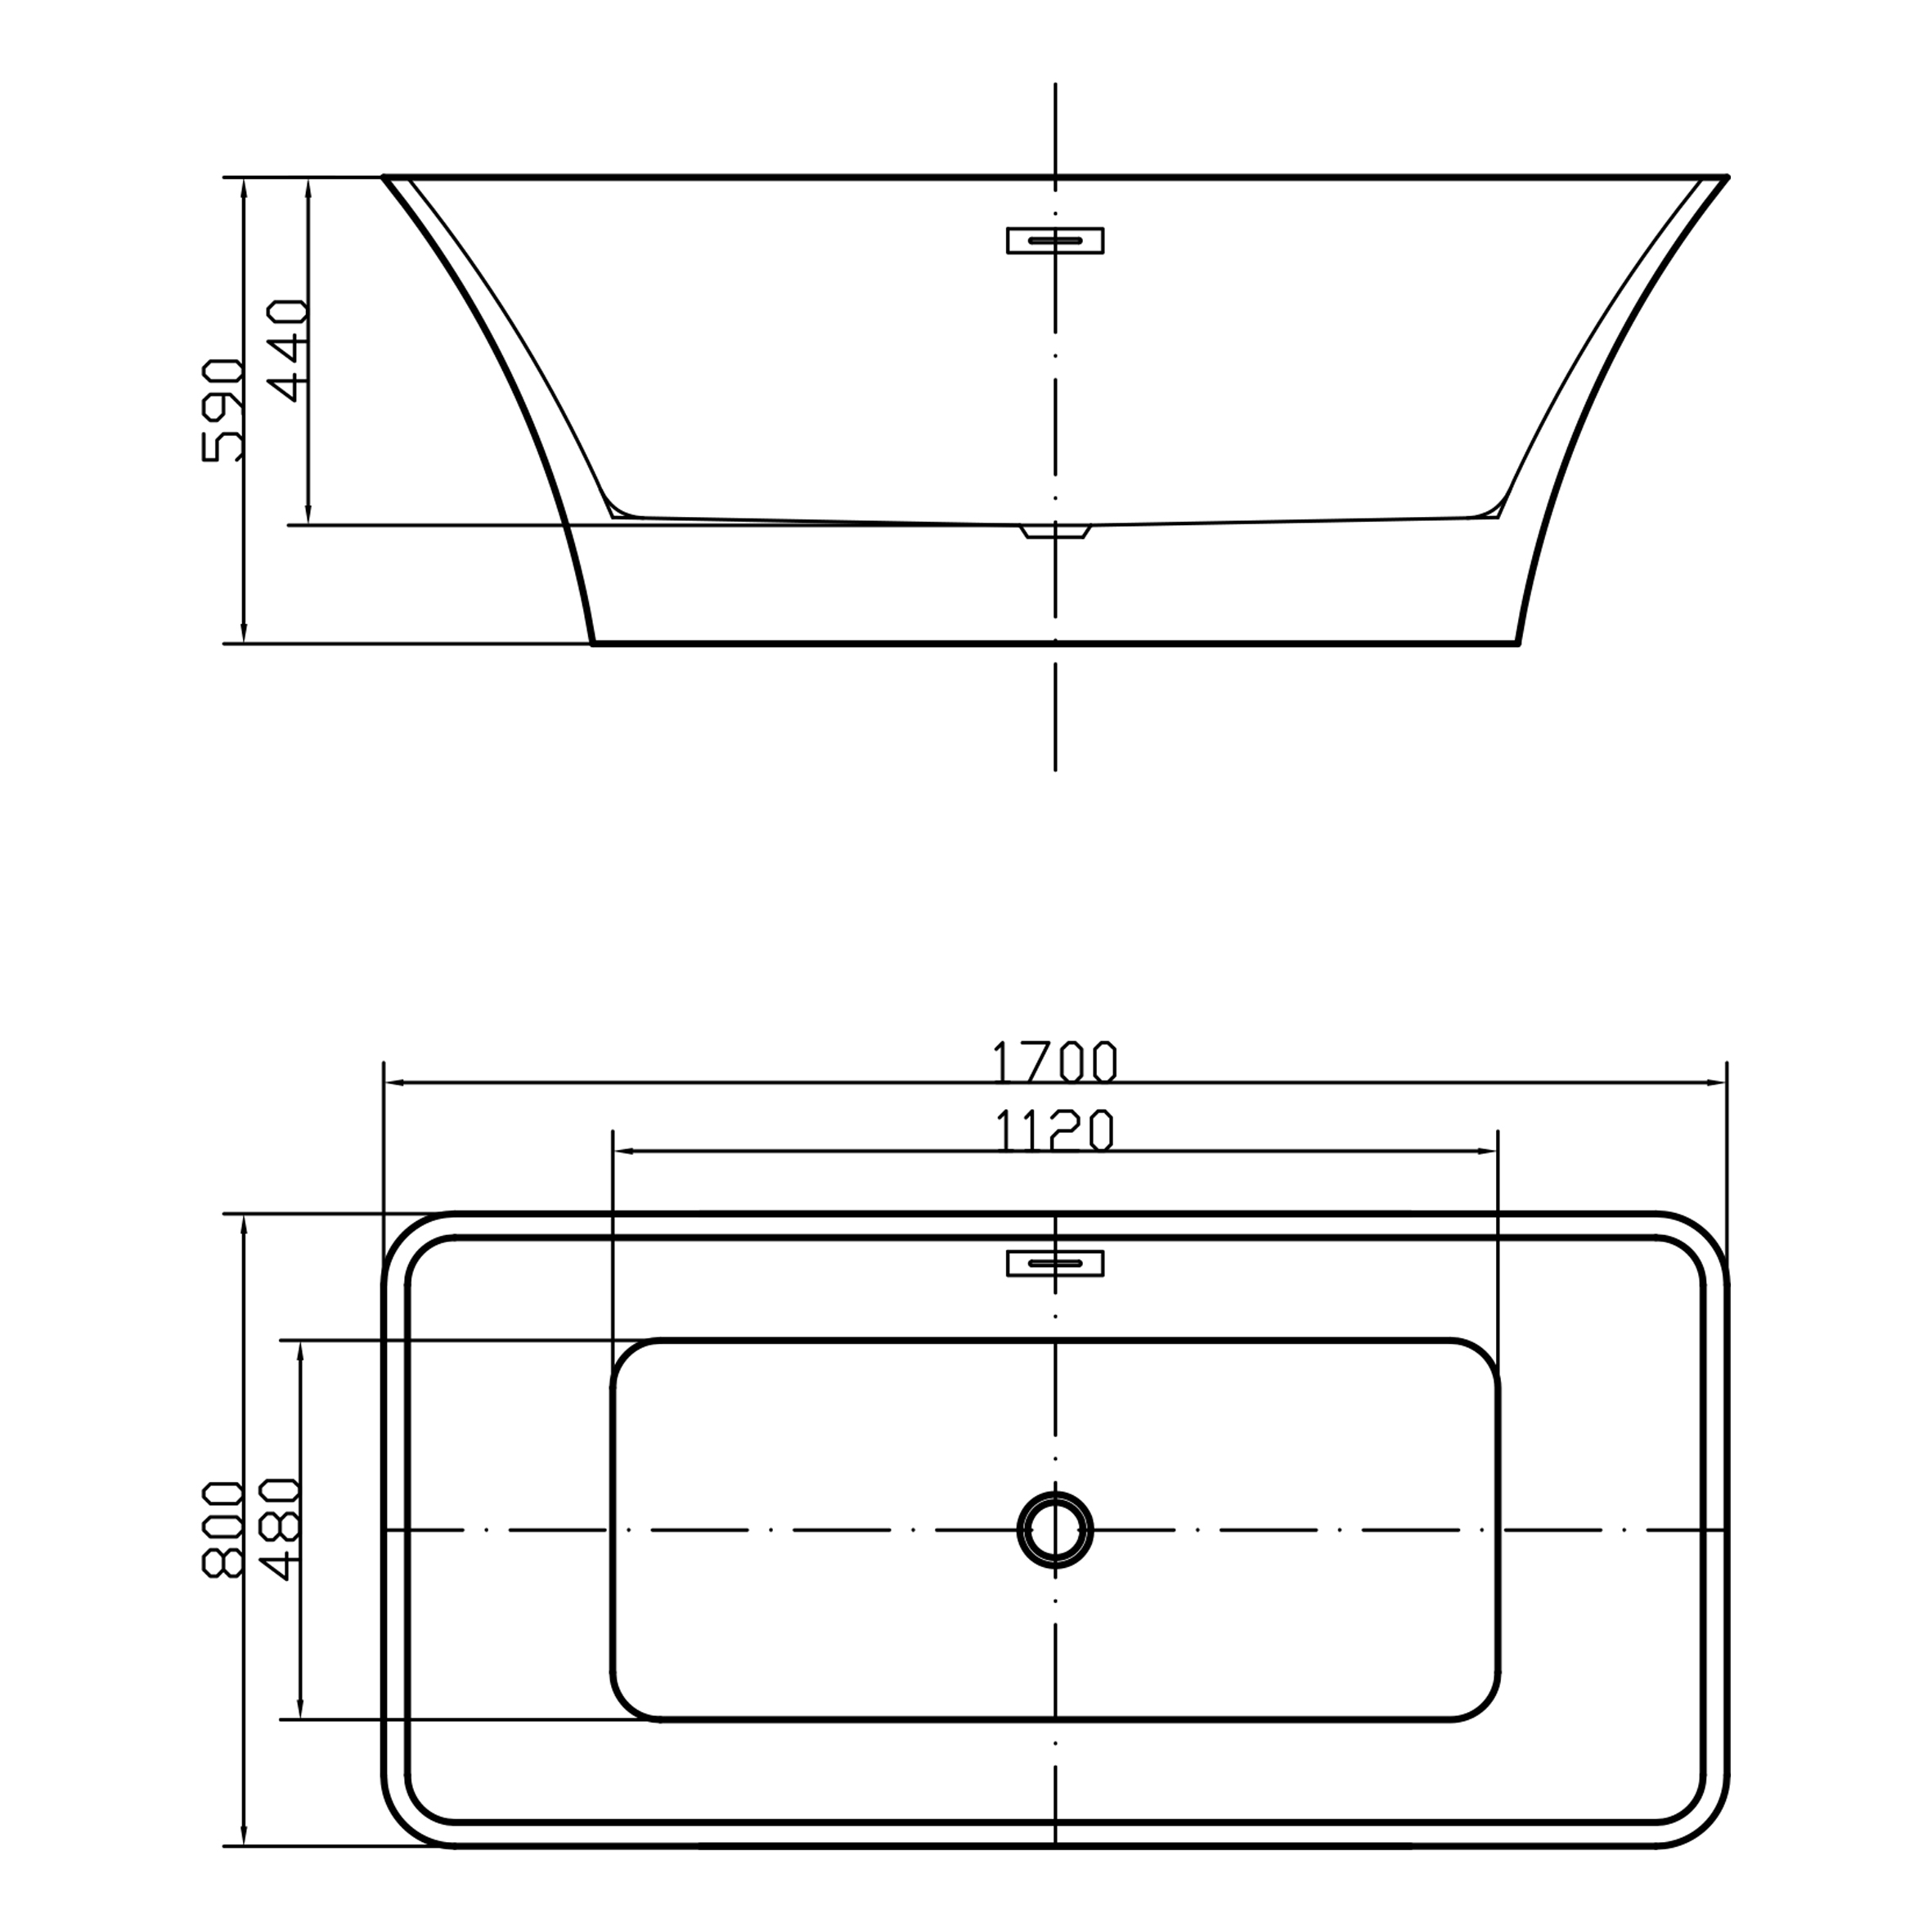 Swedbe Vita ванна отдельностоящая акриловая (1700 мм) 8833 - 3